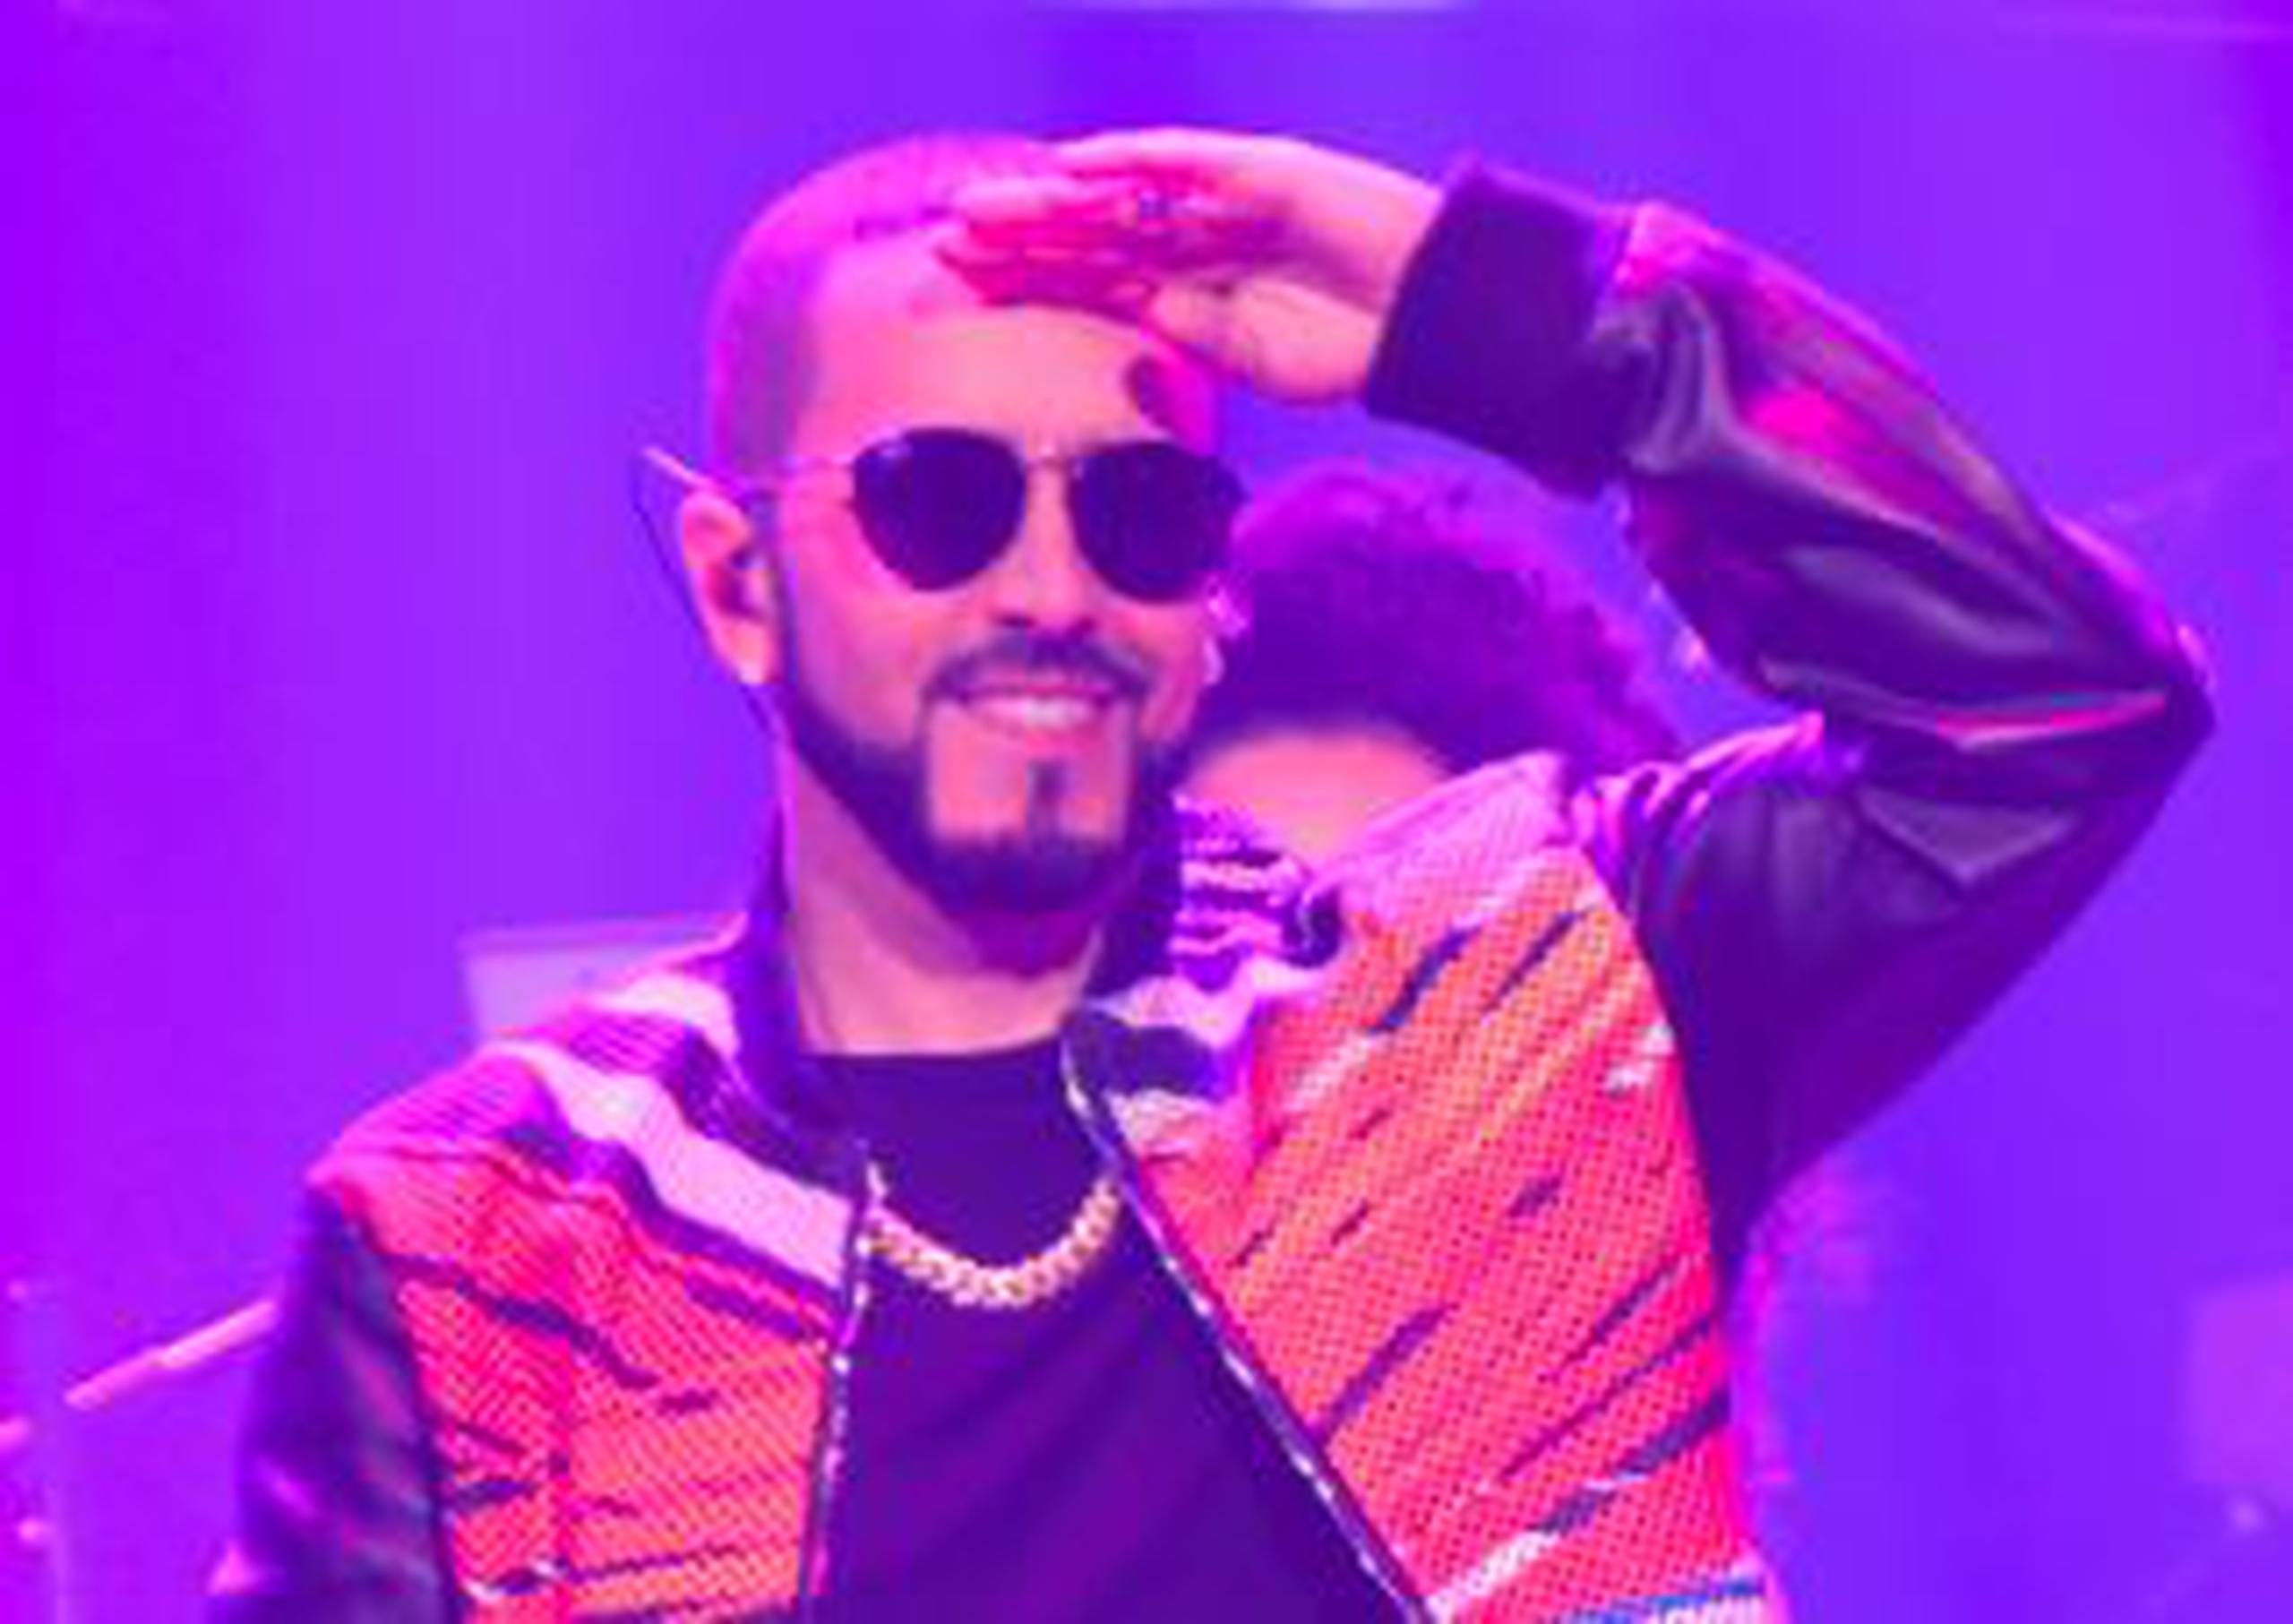 El boricua Yandel aporta el "flow" latino a la canción.